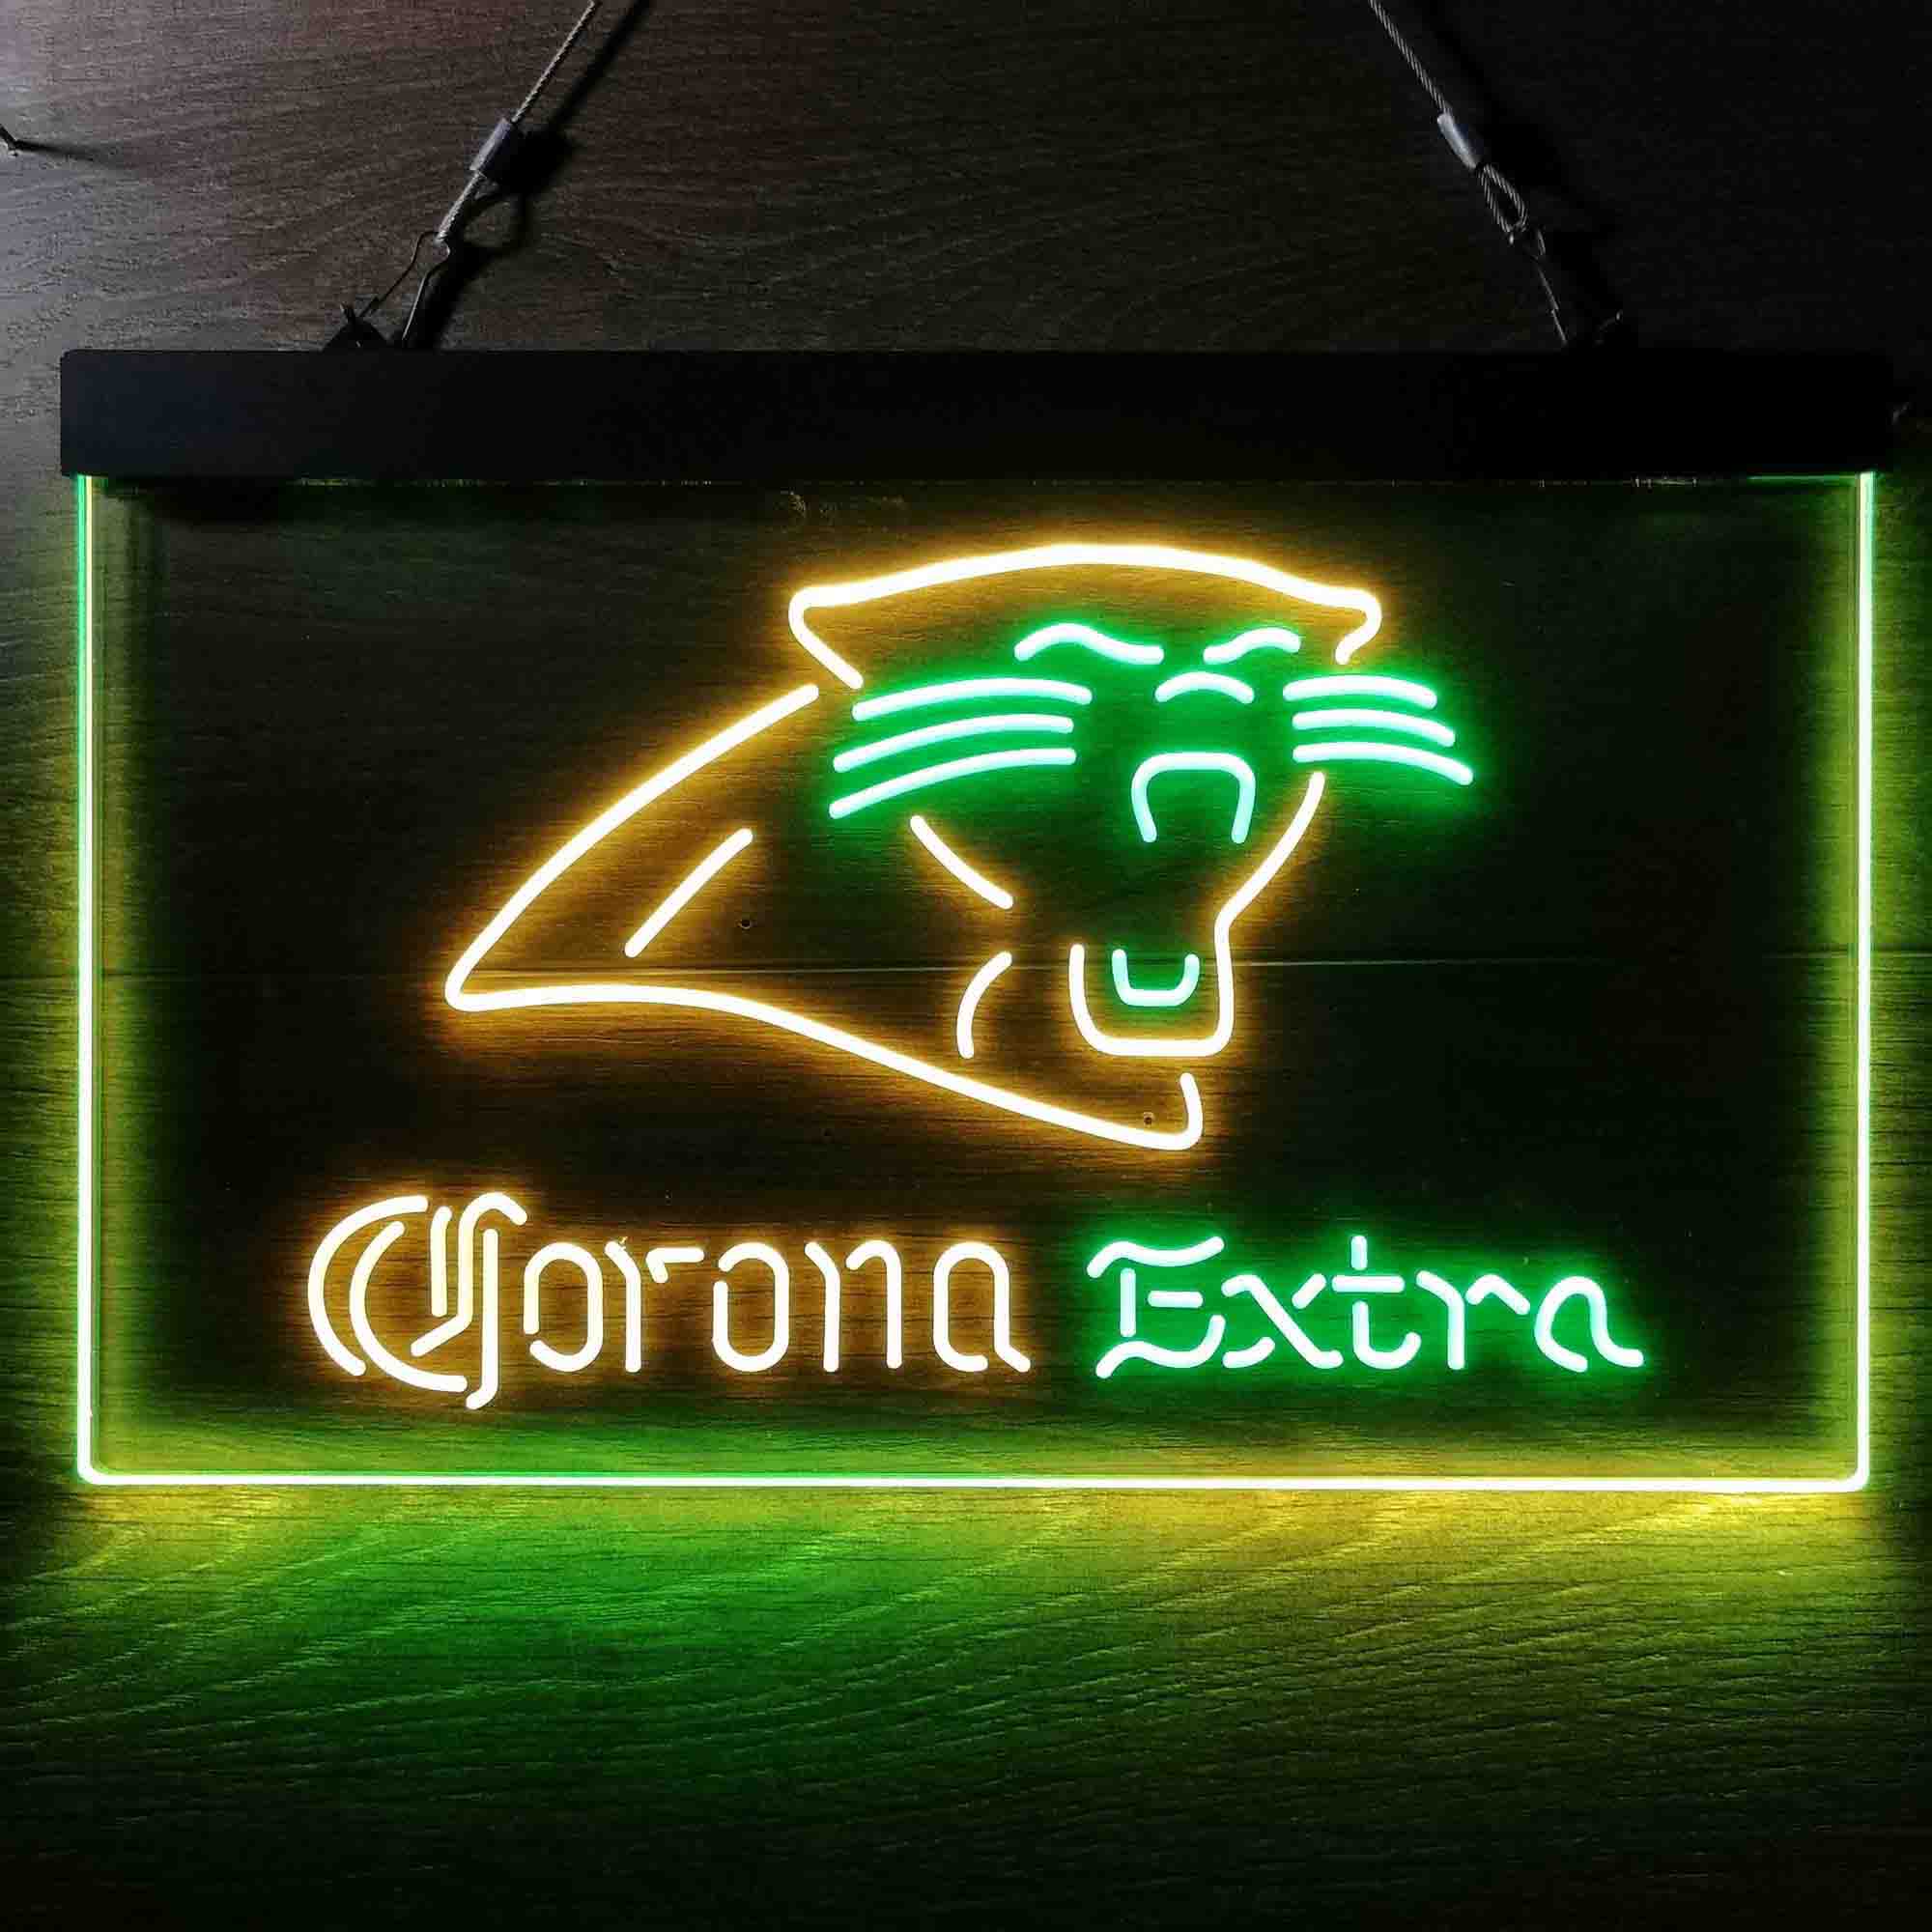 Carolina Panthers Corona Extra Neon-Like LED Sign - ProLedSign